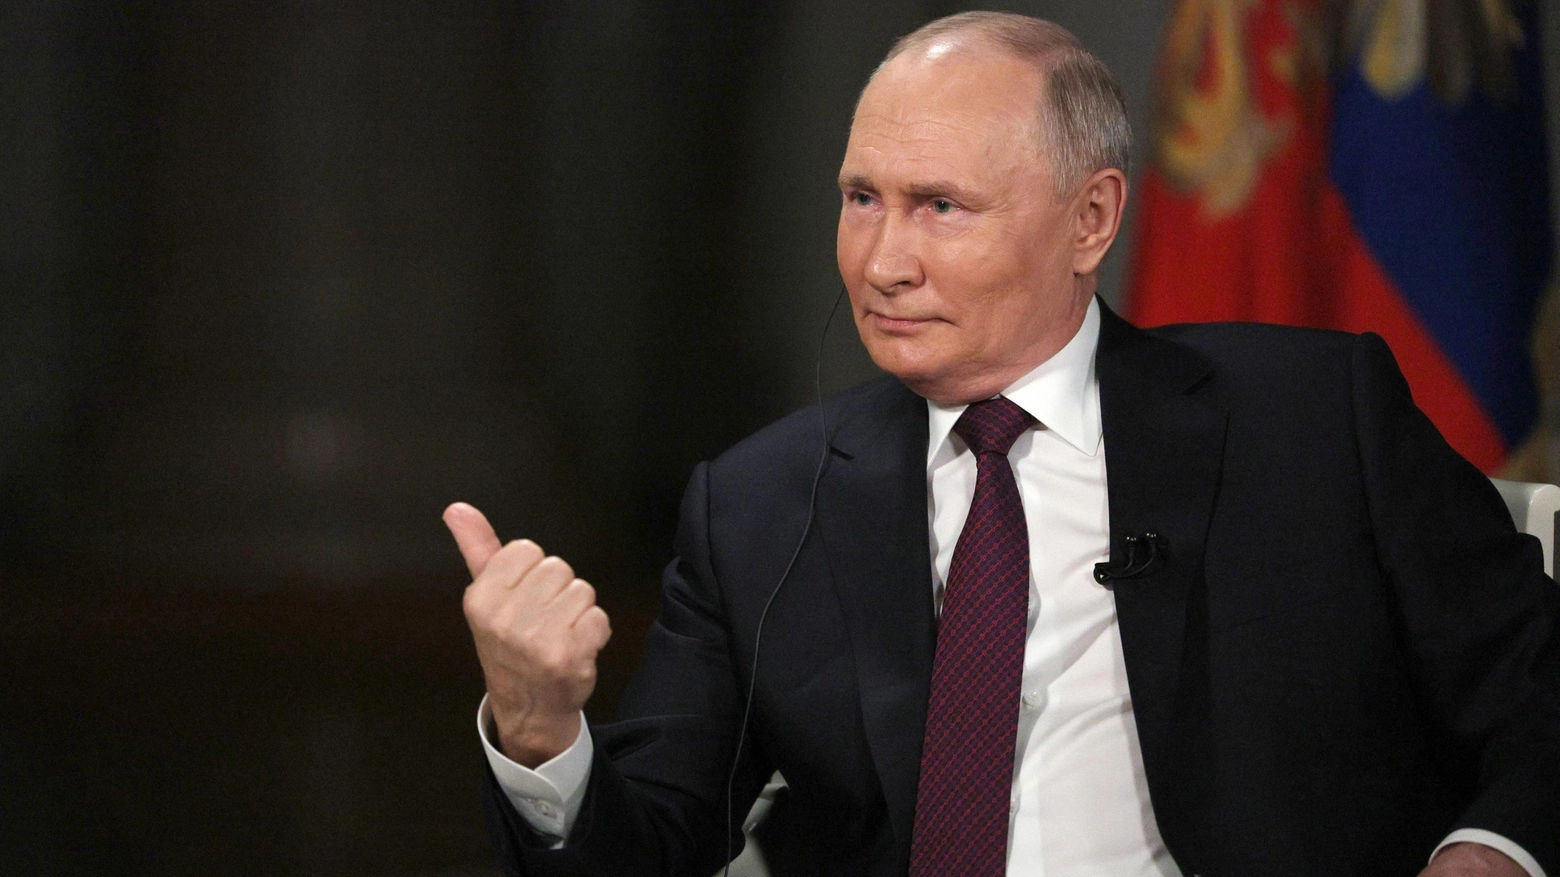 Il presidente russo Putin ha dichiarato al giornalista Usa Carlson che il sabotaggio Nord Stream è stato opera della Cia